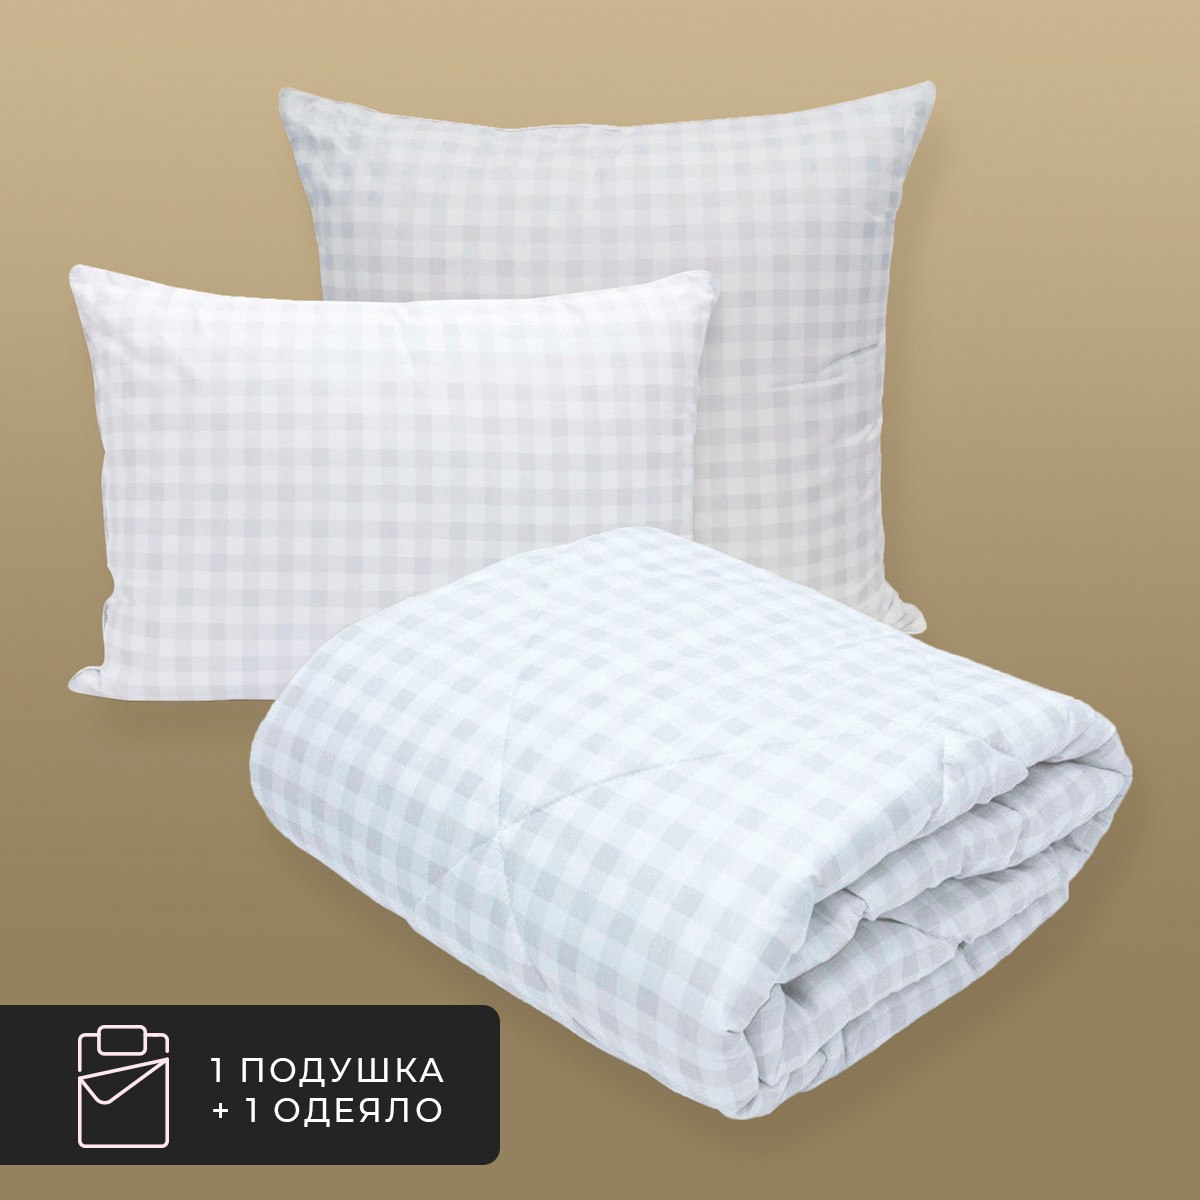 Набор 1 одеяло + 1 подушка Скандинавия, лебяжий пух в микрофибре (140х200, 50х70)